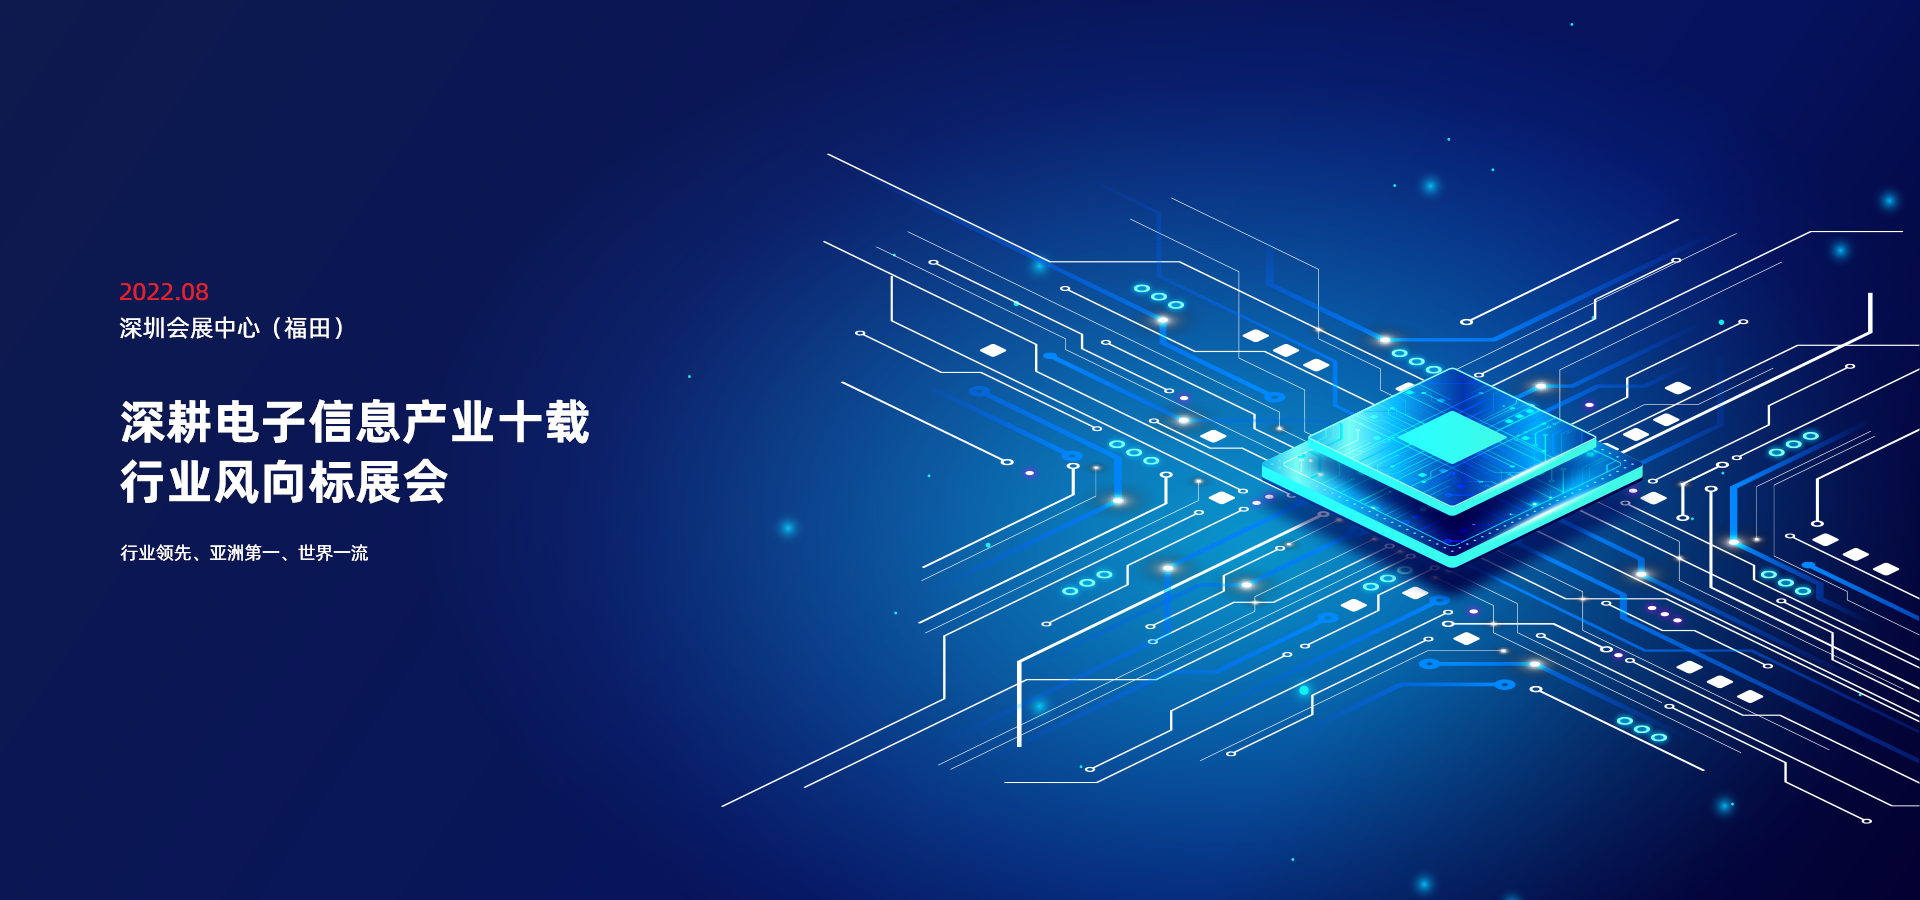 深圳微纳感知-第十届中国电子信息博览会-安防赋能大会邀请